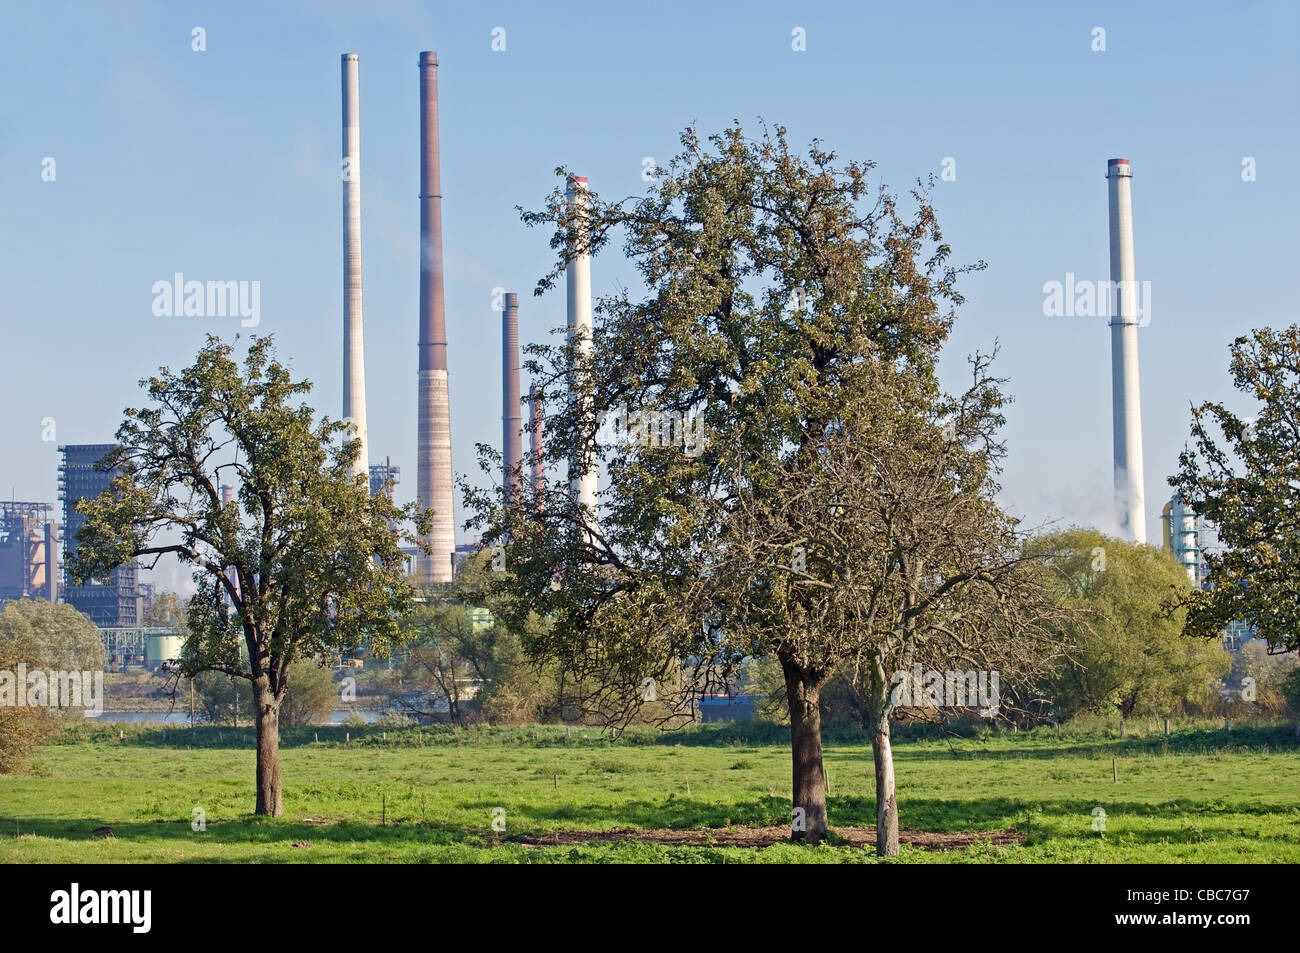 ThyssenKrupp smelting works, Duisburg, North Rhine-Westphalia, Germany. Stock Photo